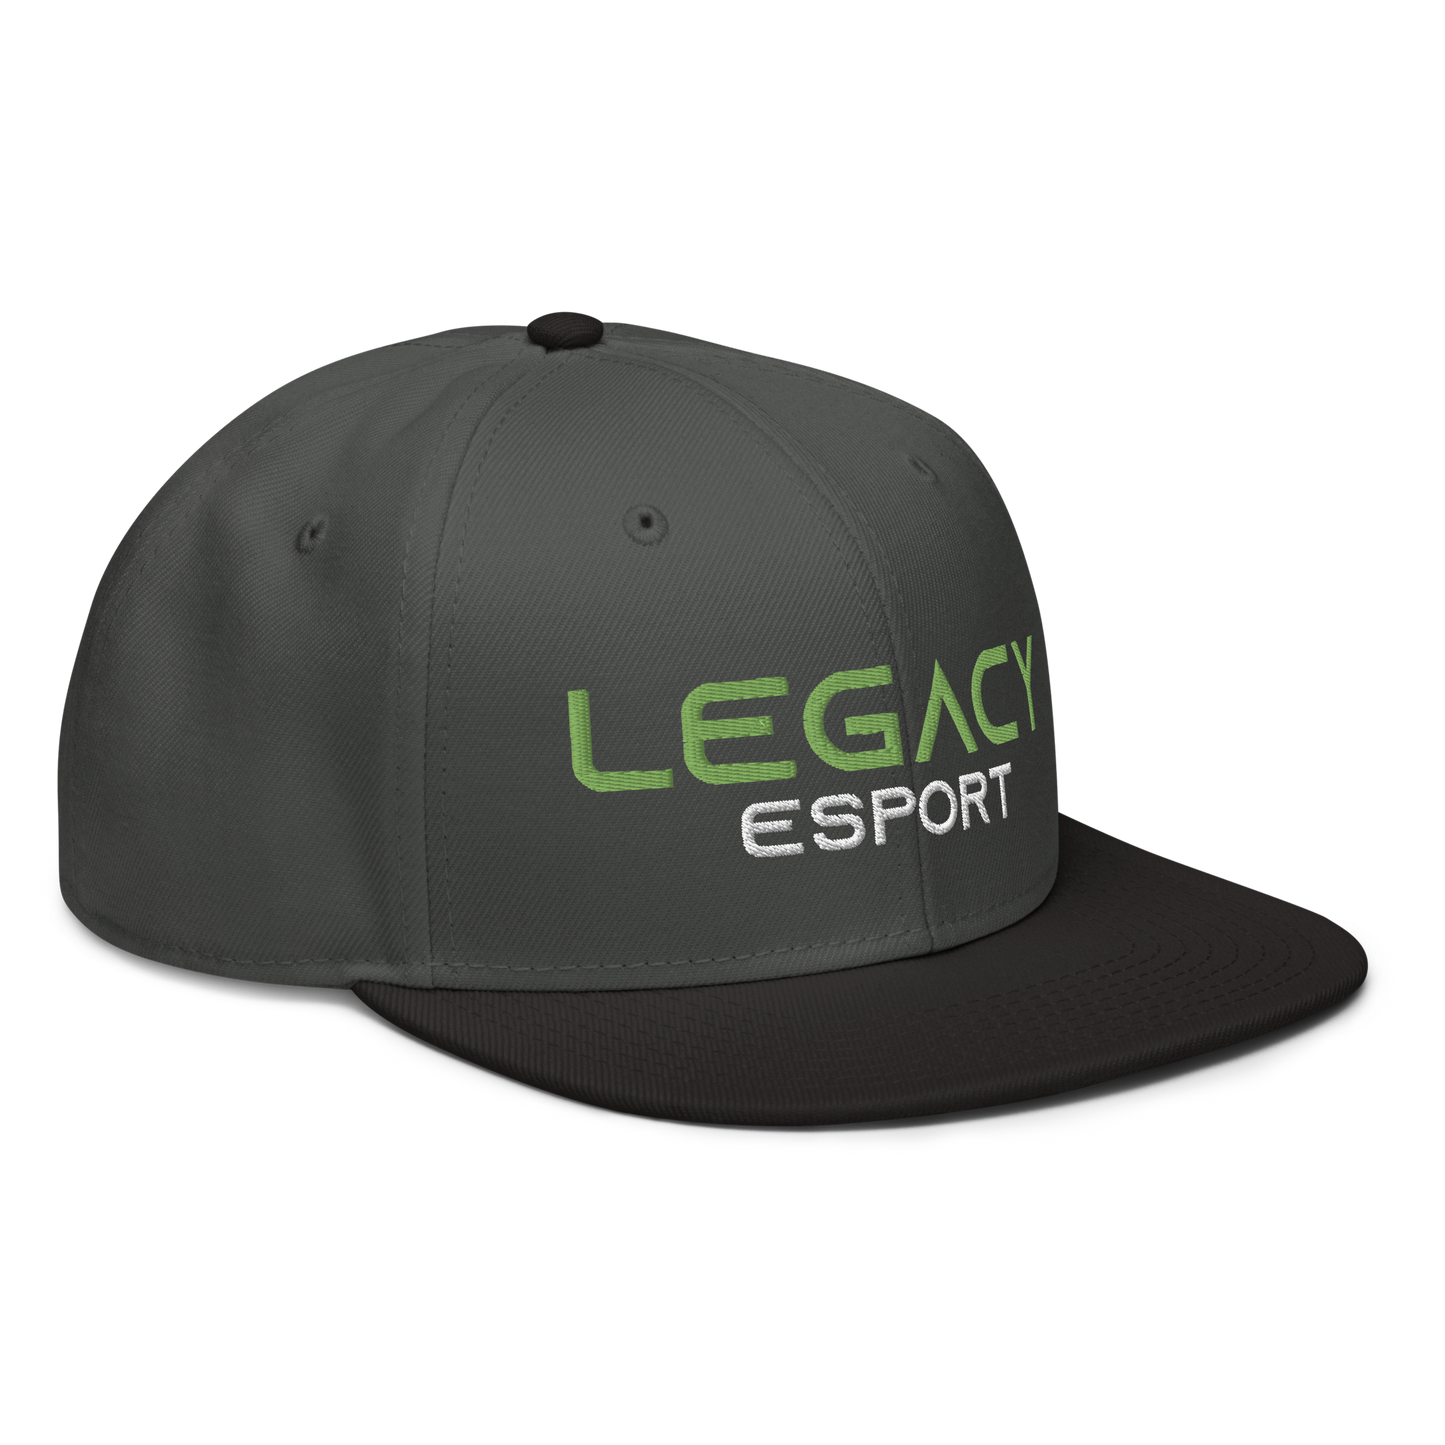 LEGACY ESPORT - Snapback Cap Green